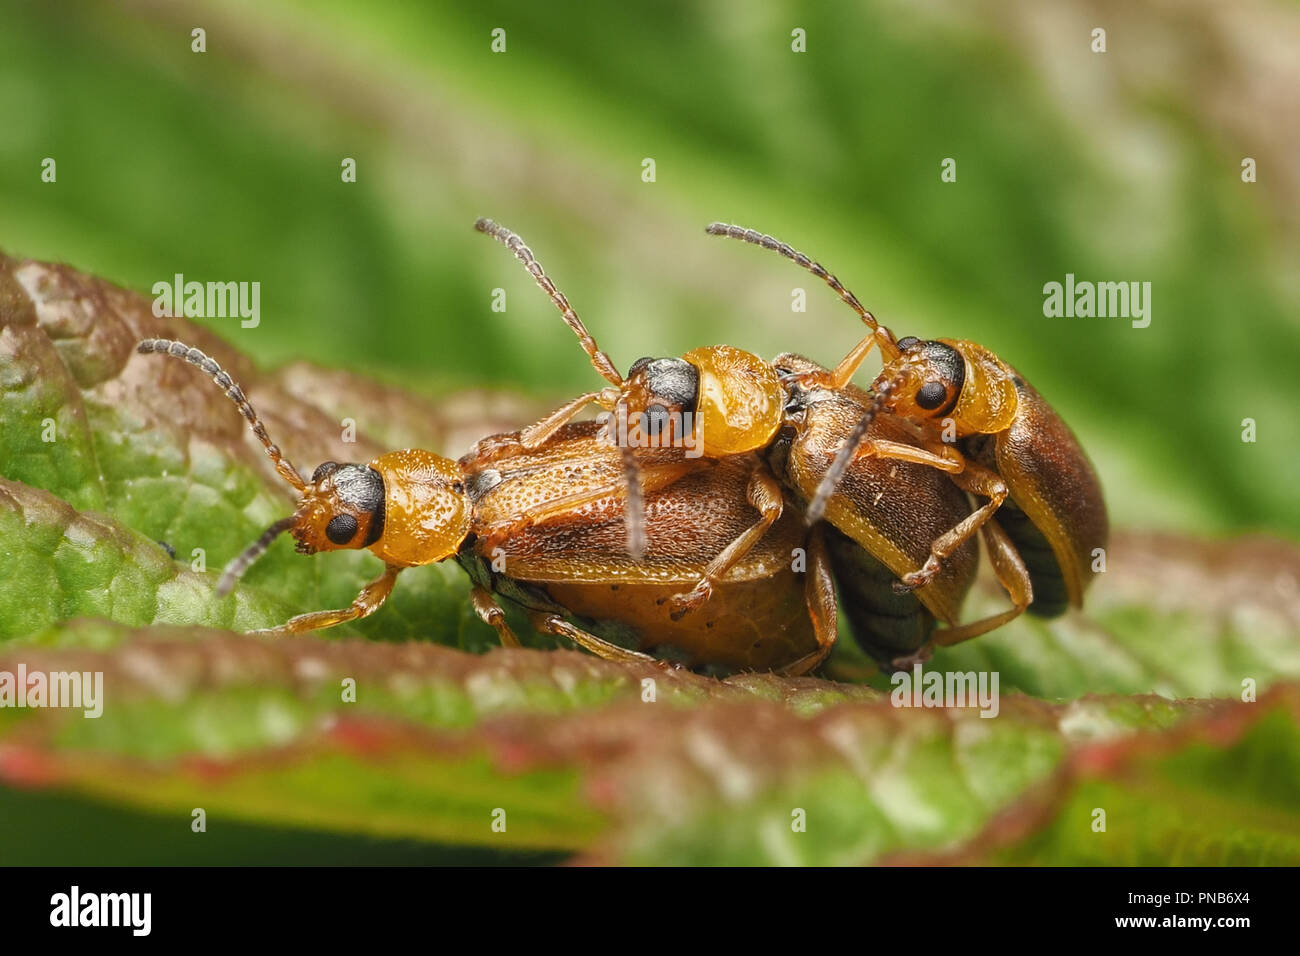 Les criocères d'accouplement (Galerucella sp.) avec des tiers beetle à la fin. Tipperary, Irlande Banque D'Images